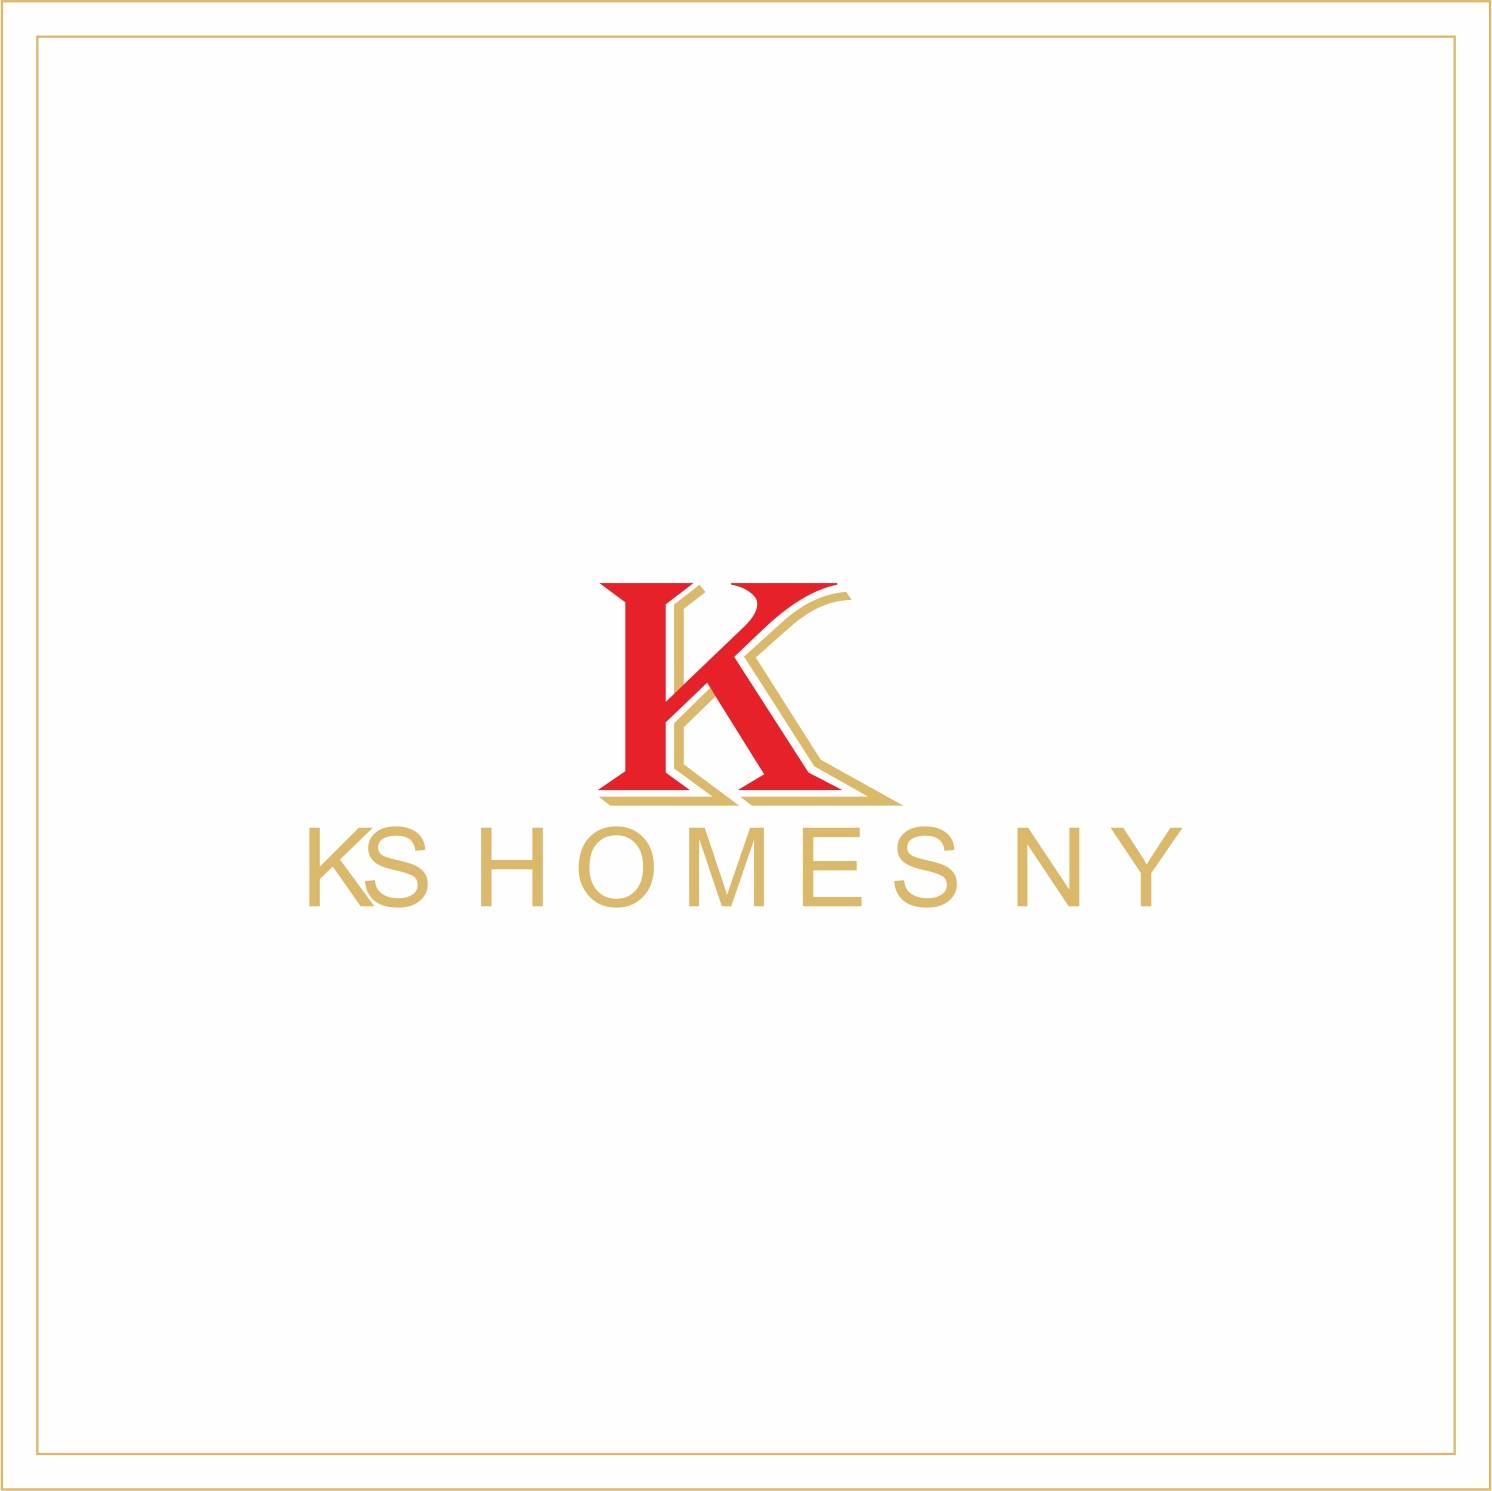 KS Homes NY